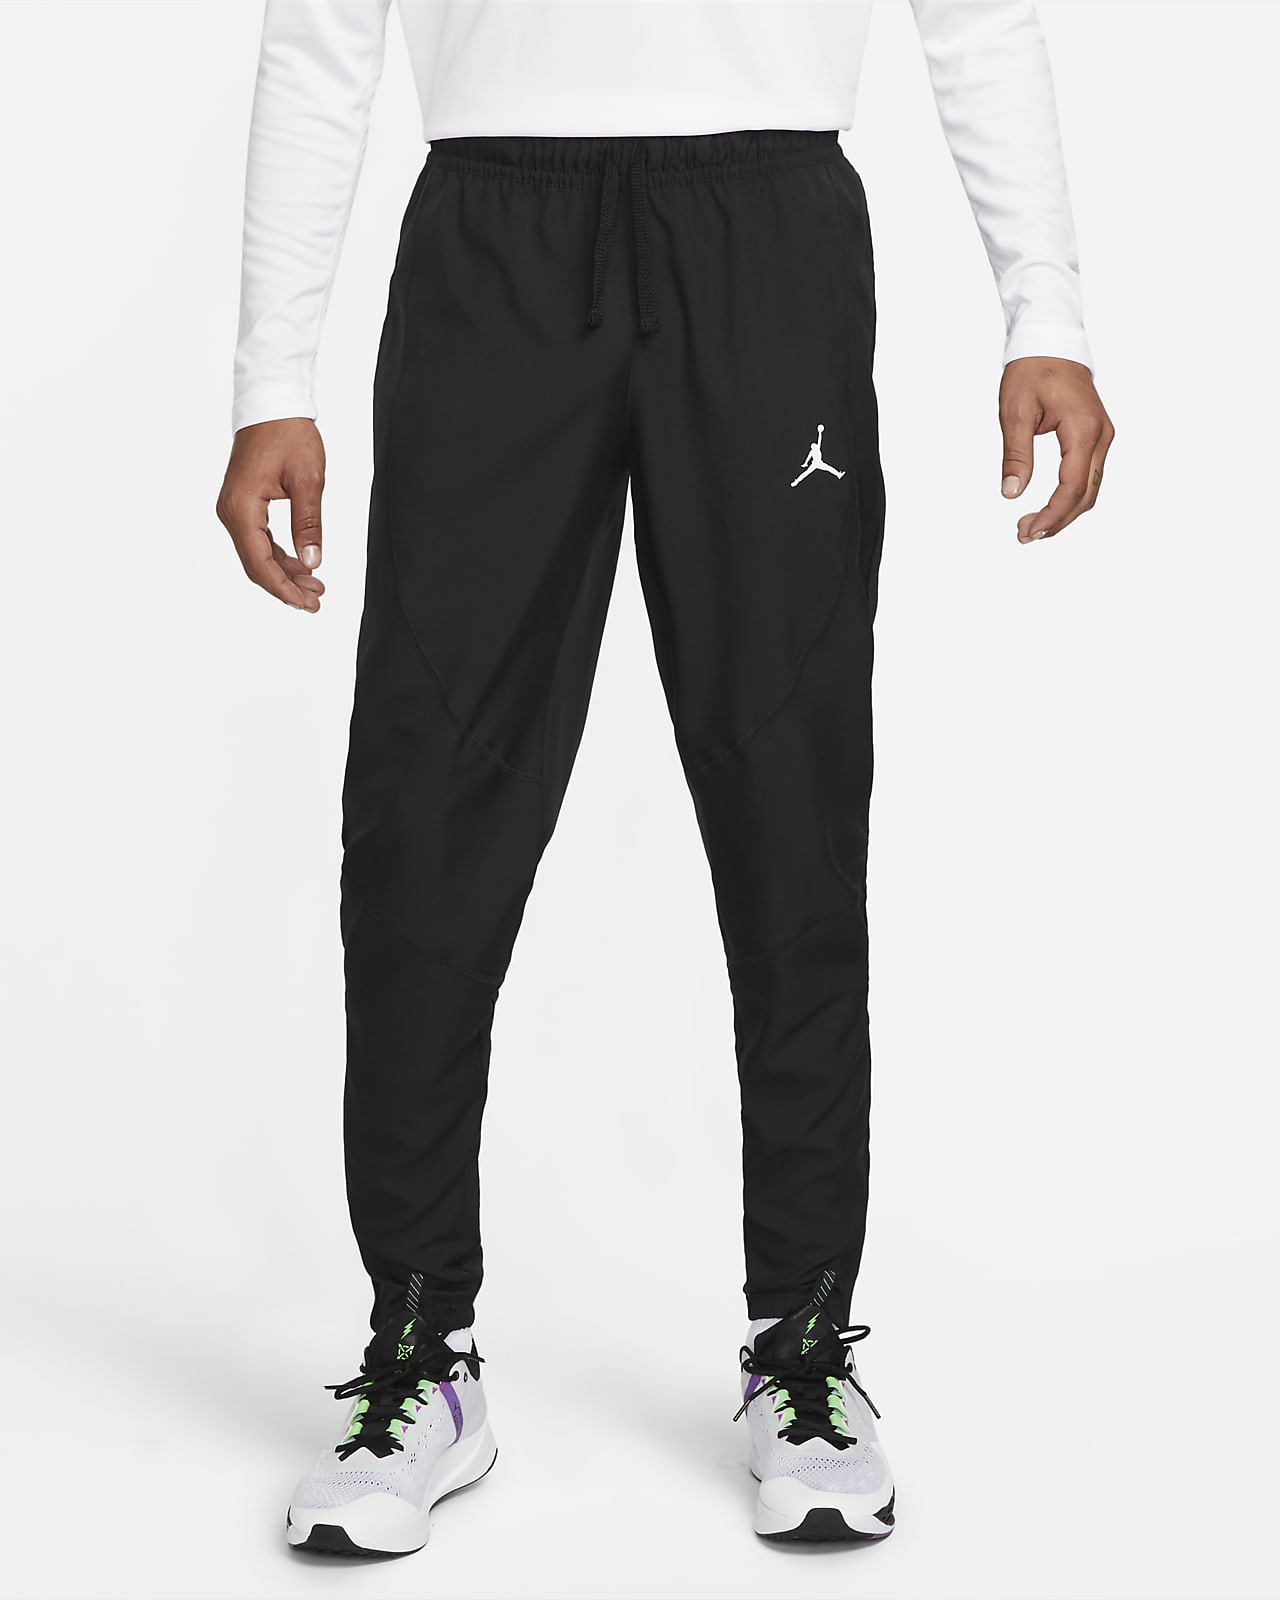 Pants de Woven hombre Jordan Sport Dri-FIT. Nike.com